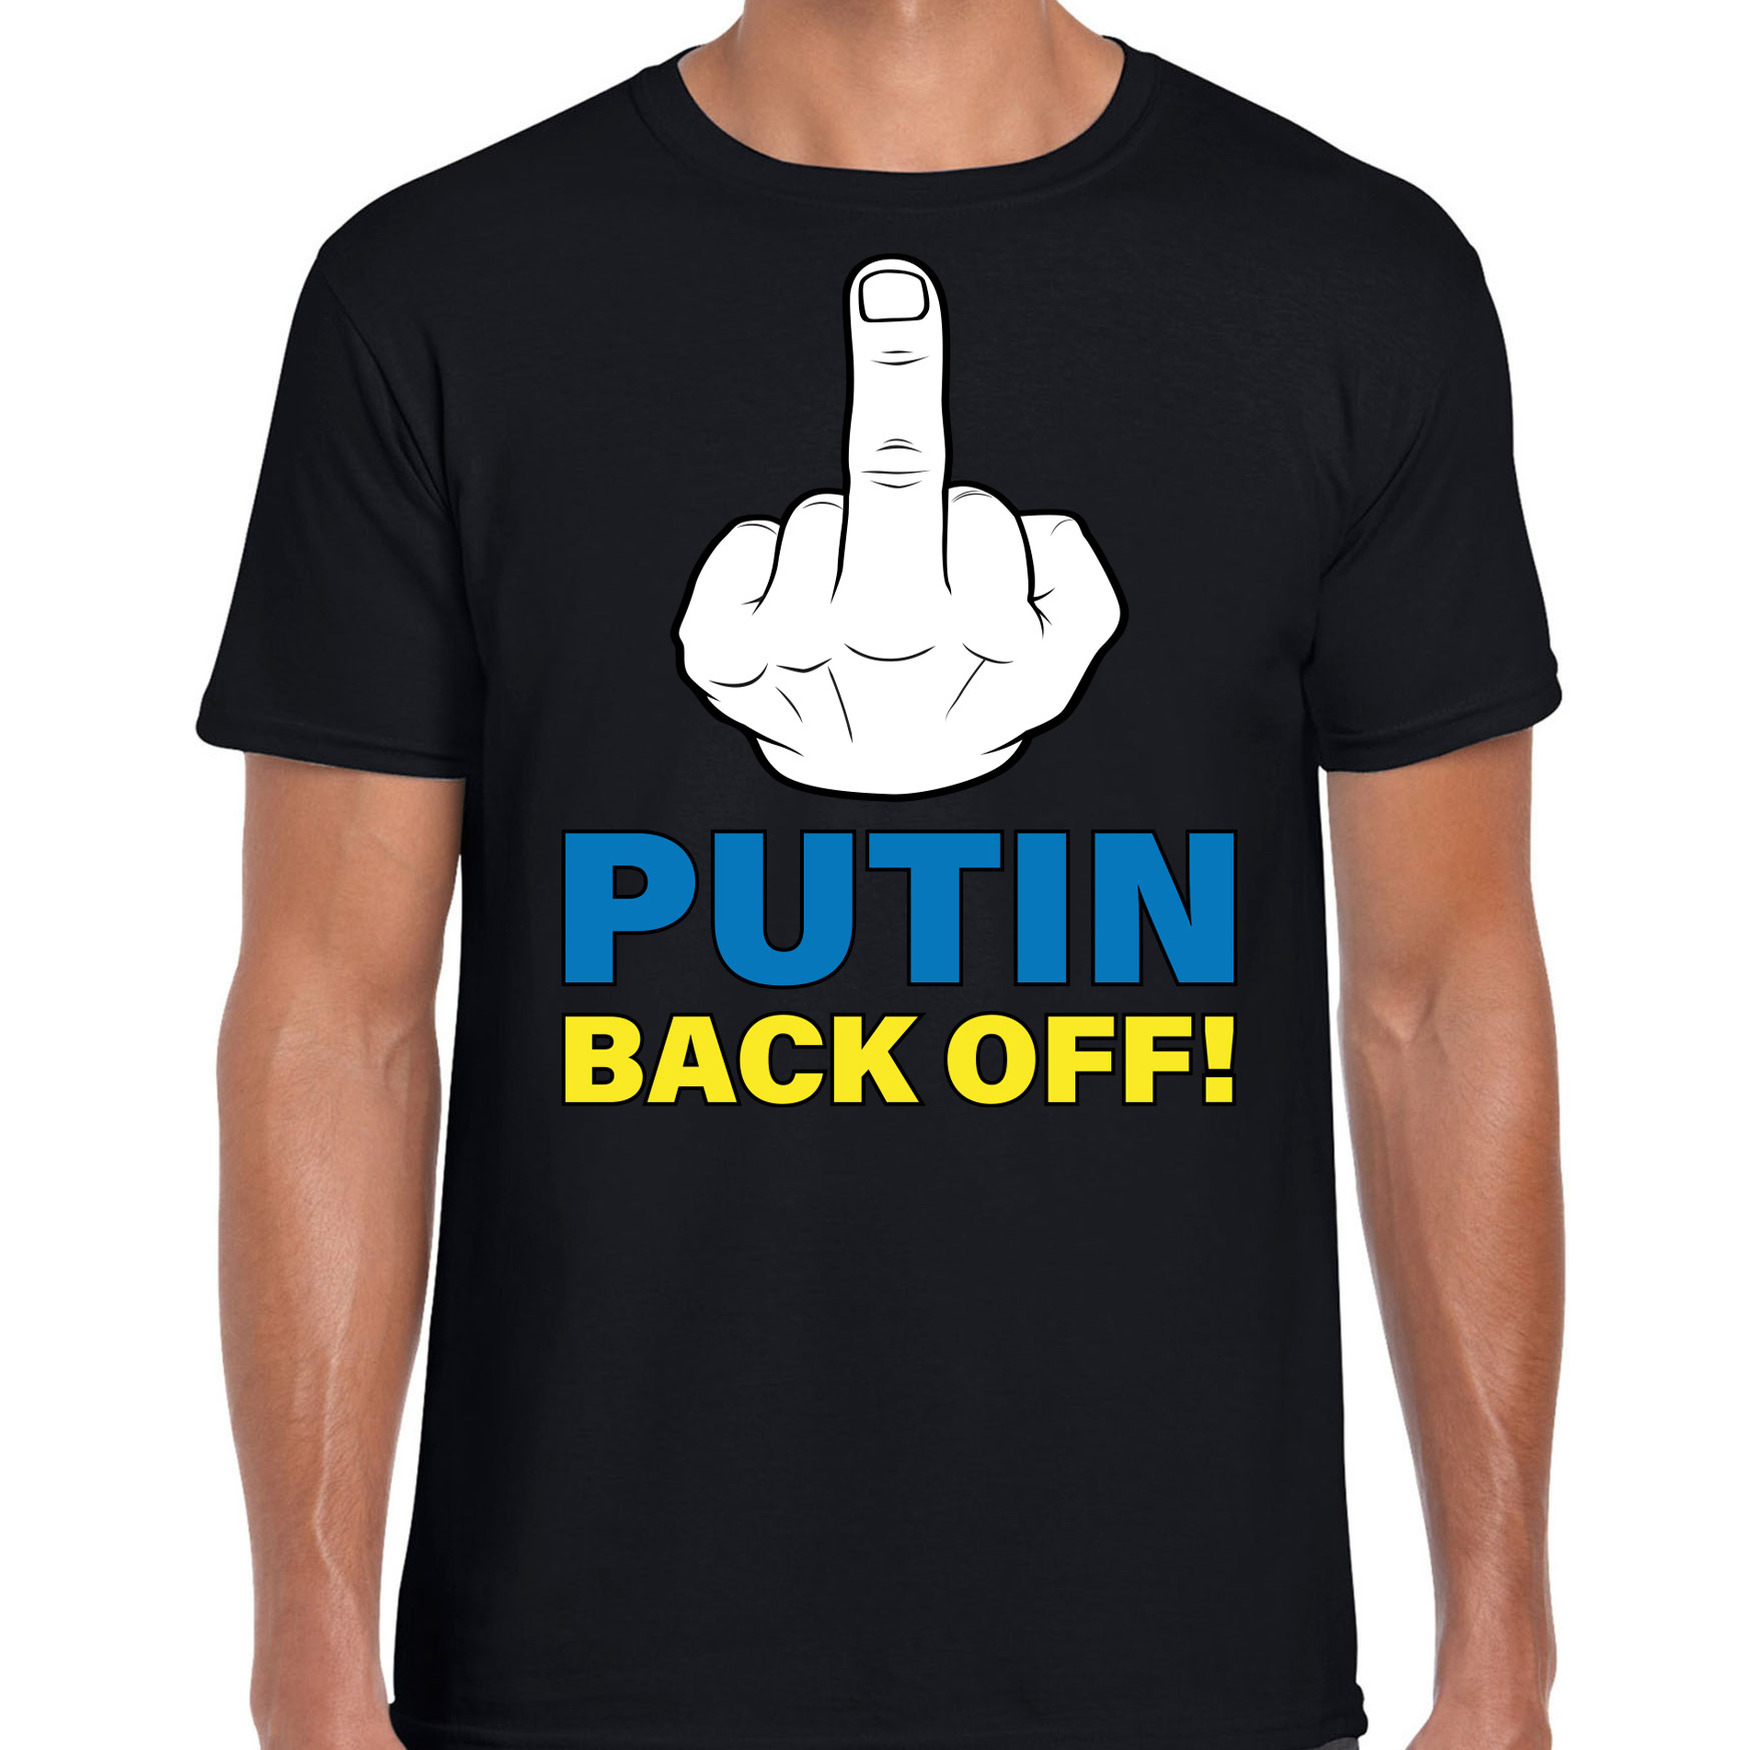 Putin back off middelvinger t shirt zwart heren Oekraine shirt met Oekraiense vlag in letters